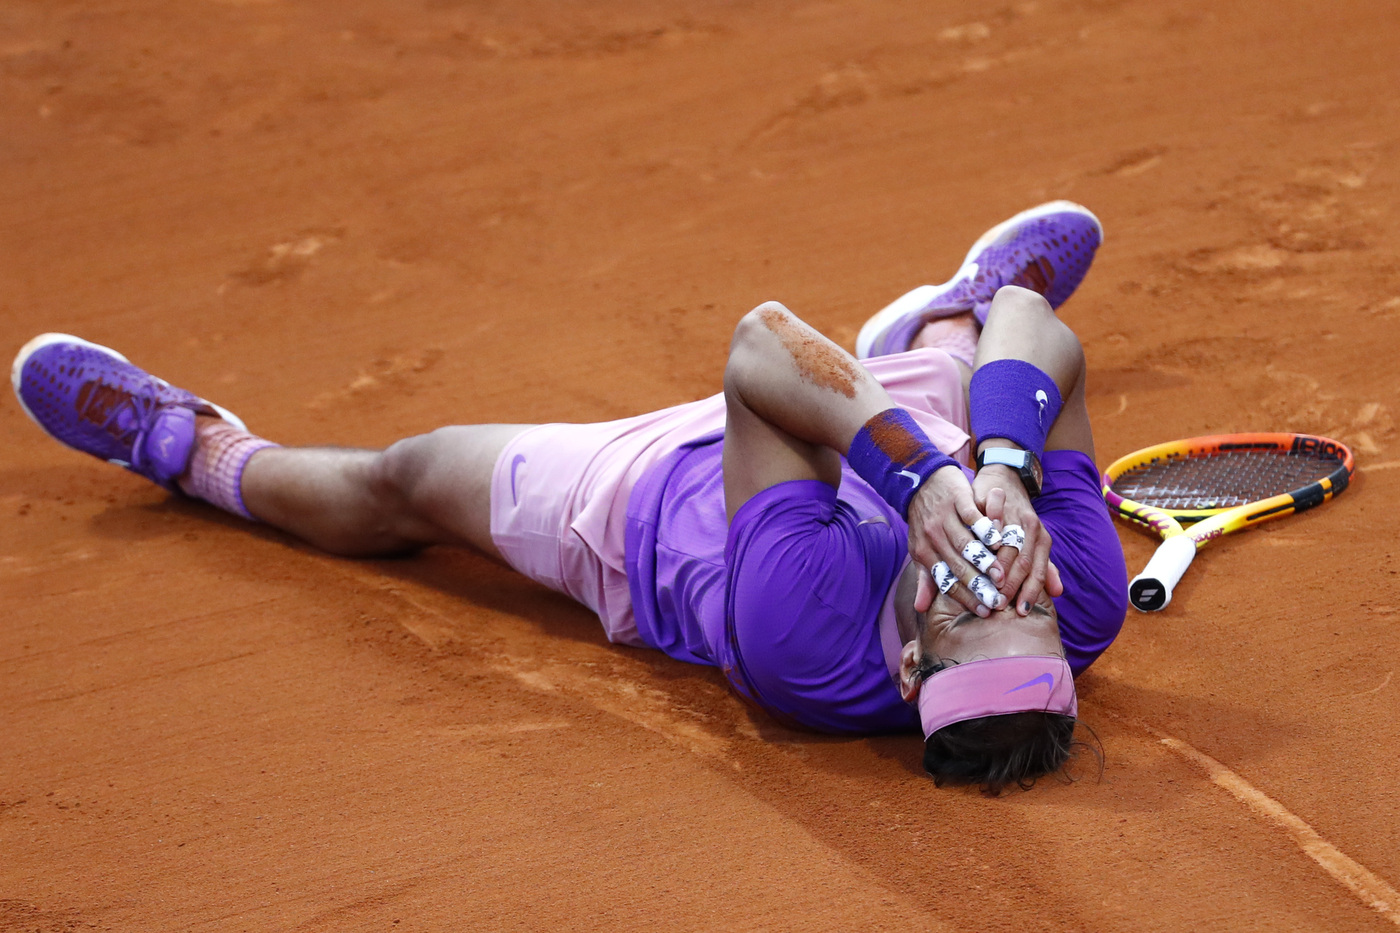 ATP Barcellona 2021, Rafael Nadal: “Mai giocata una finale così qui